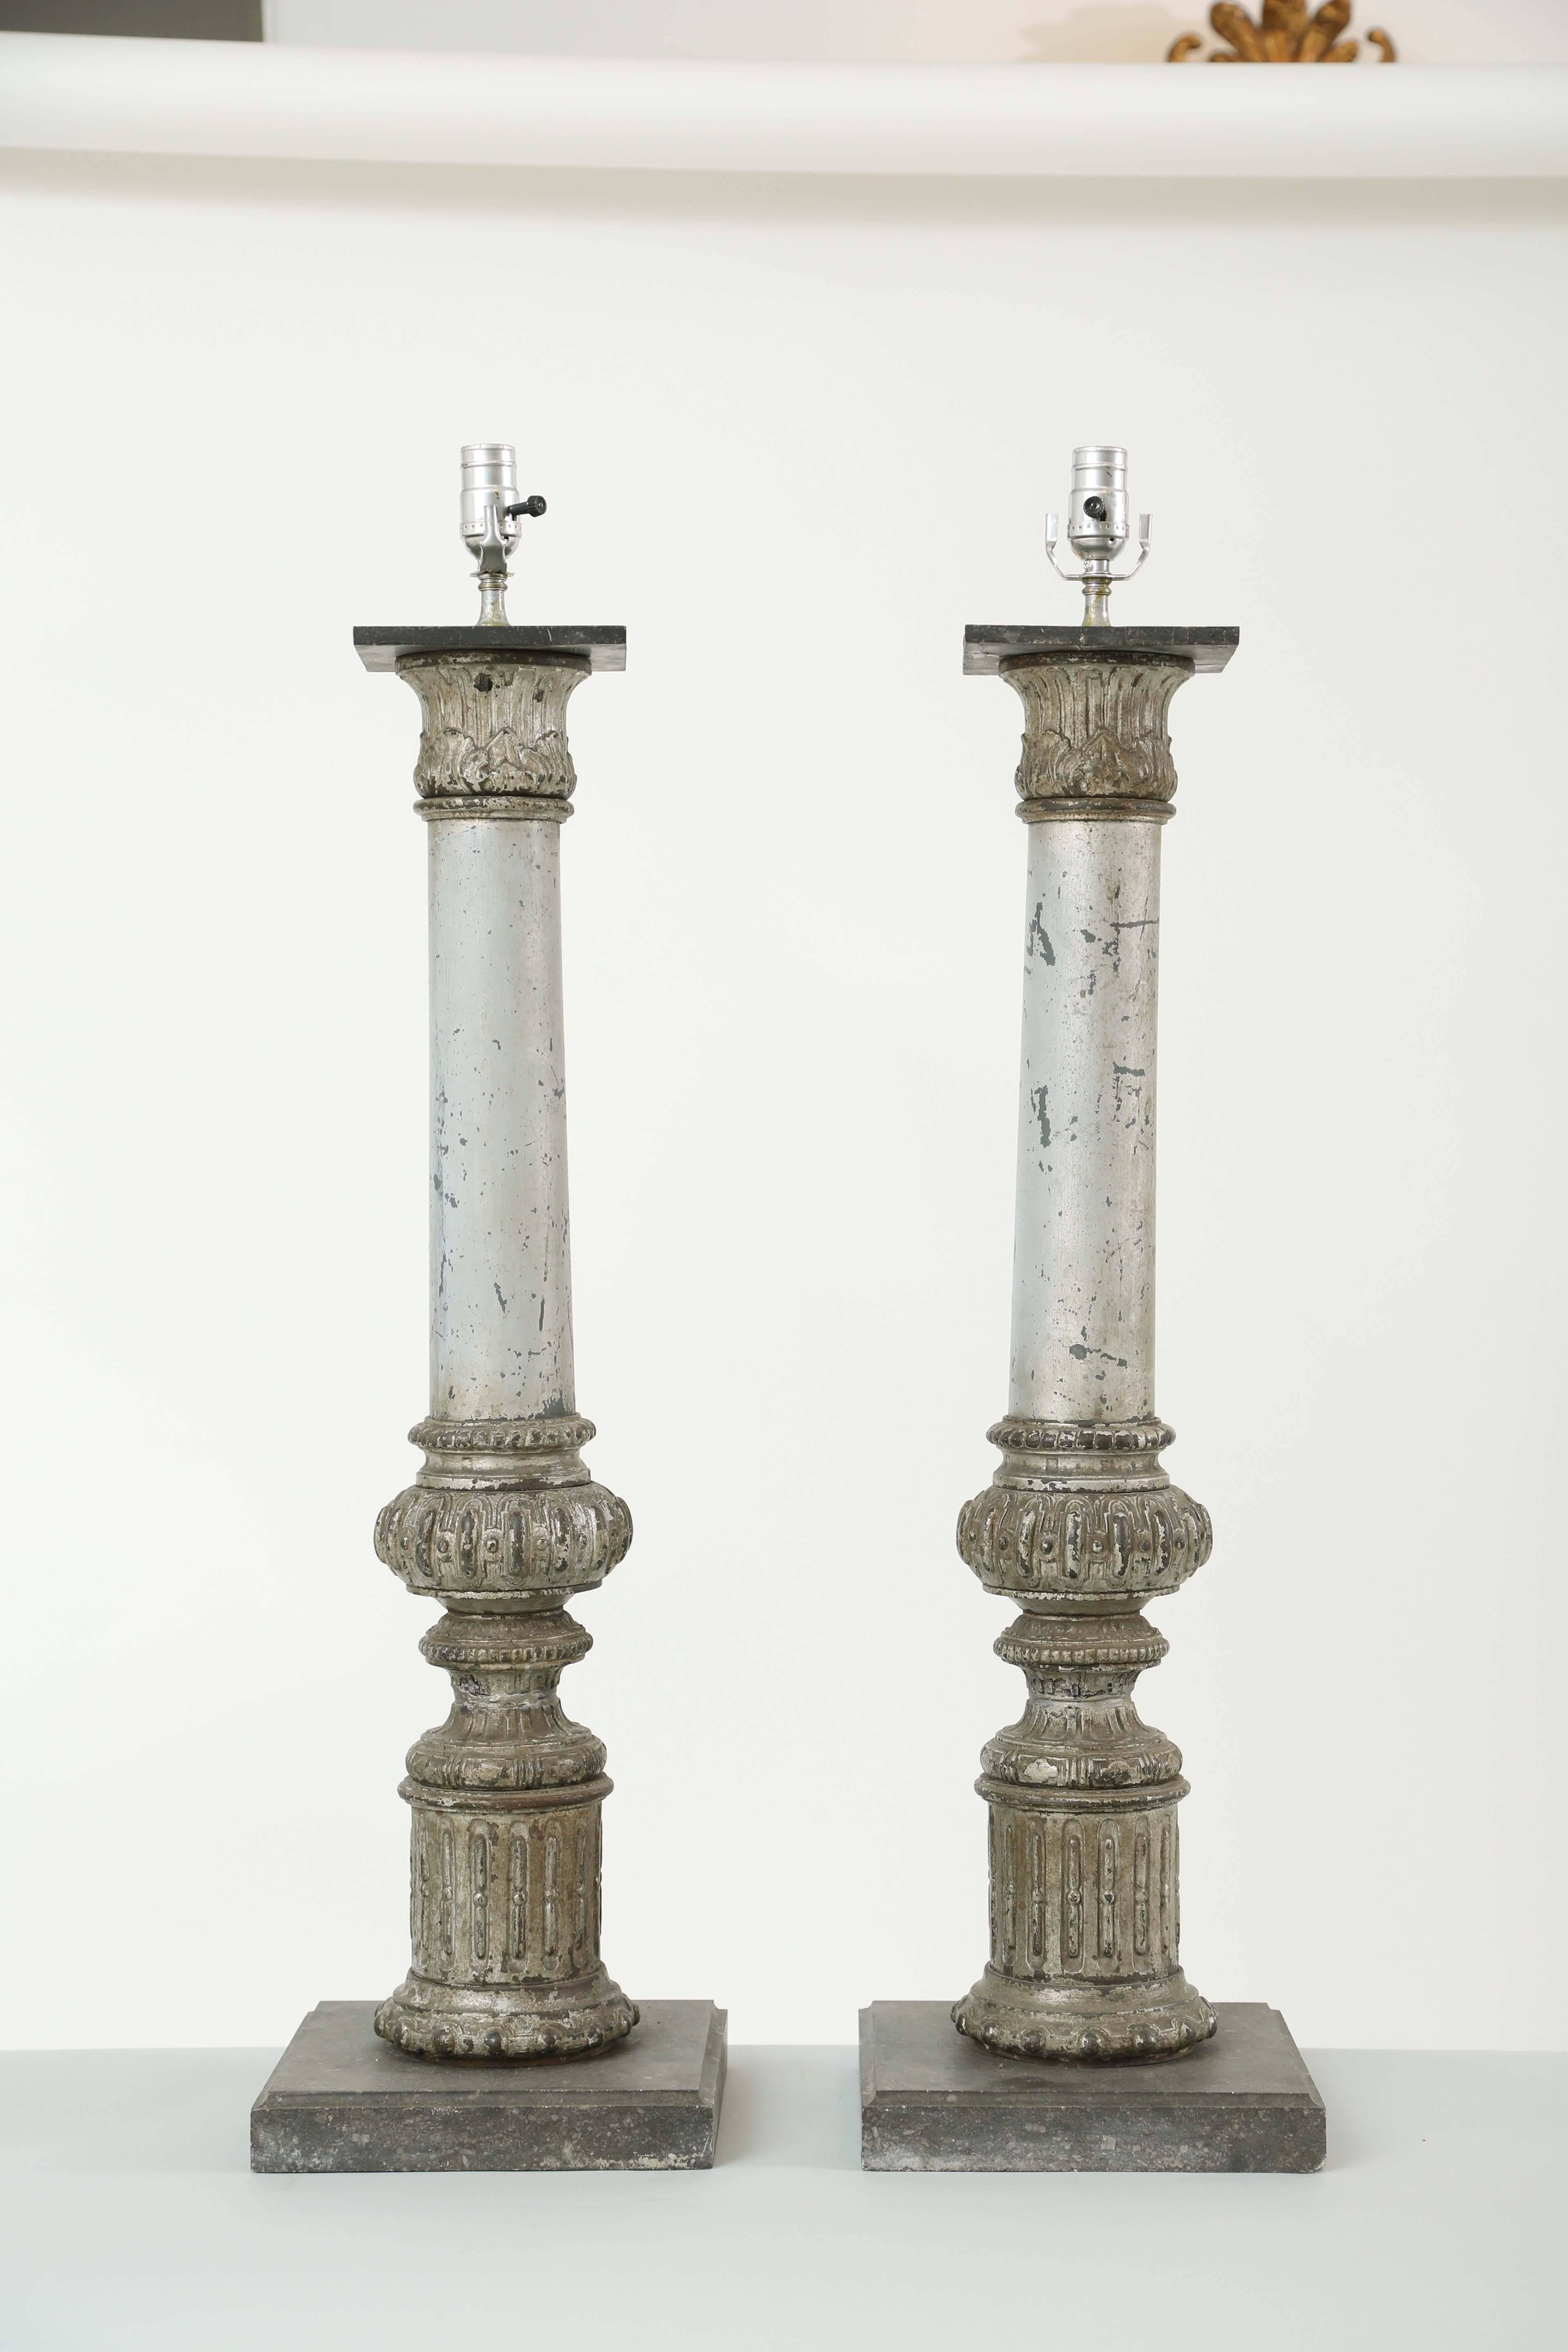 Paire de lampes, en fer argenté peint et parcellaire, chacune une colonne avec un chapiteau corinthien, sur une base tronconique et une plinthe cylindrique cannelée, montées sur des plateformes en marbre.

Stock ID : D9377